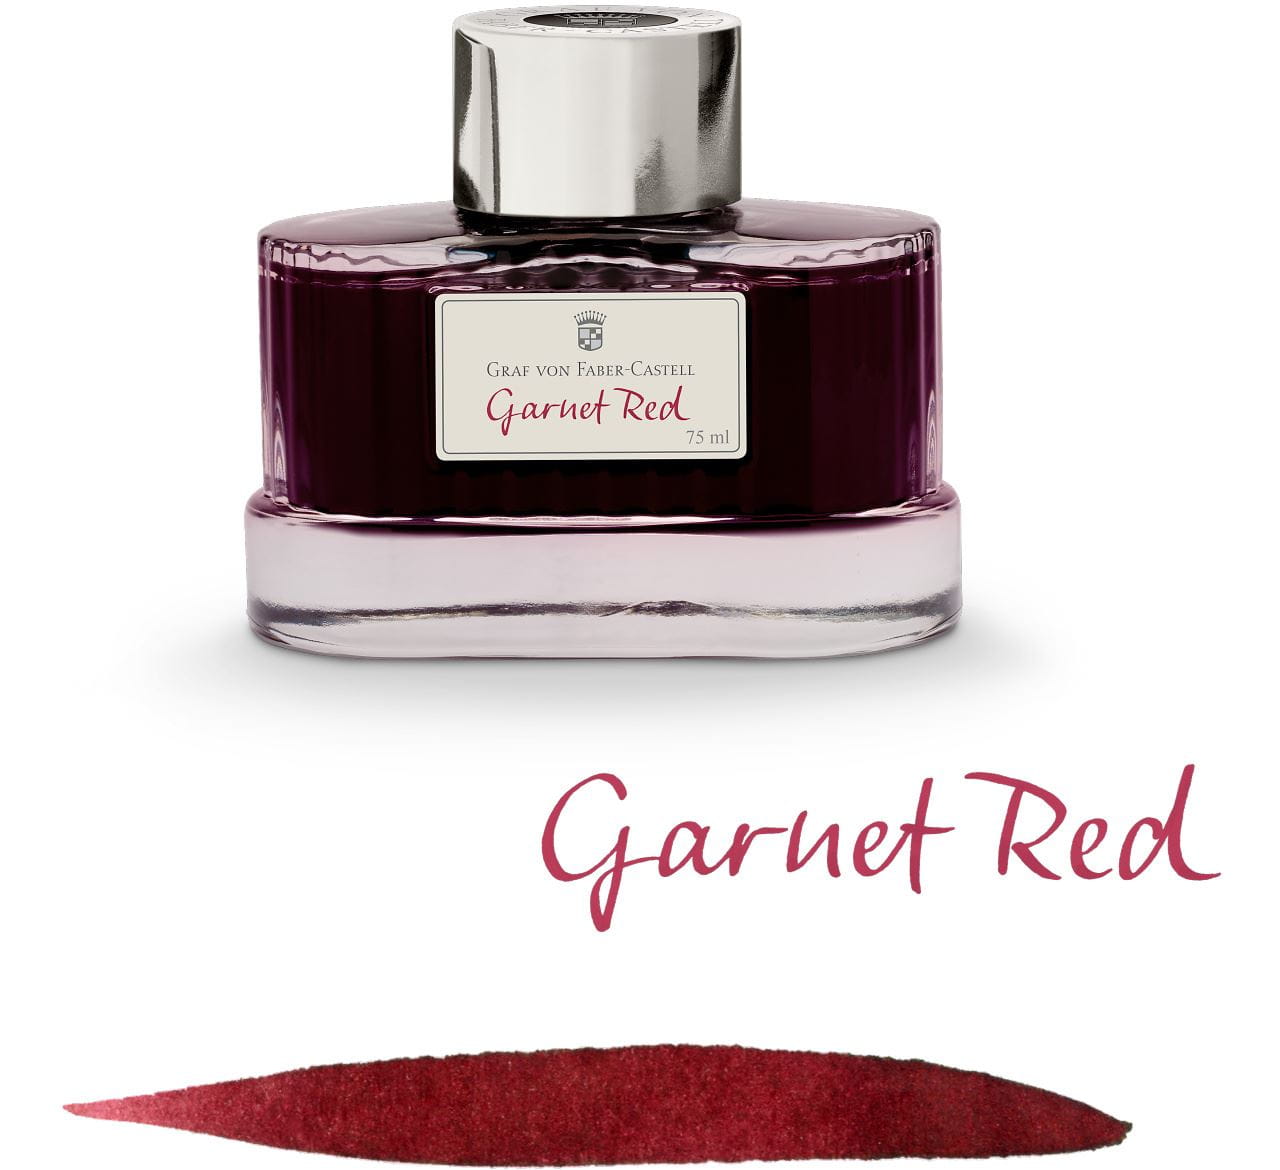 Graf-von-Faber-Castell - Frasco de tinta na cor Vermelho Granada, 75ml